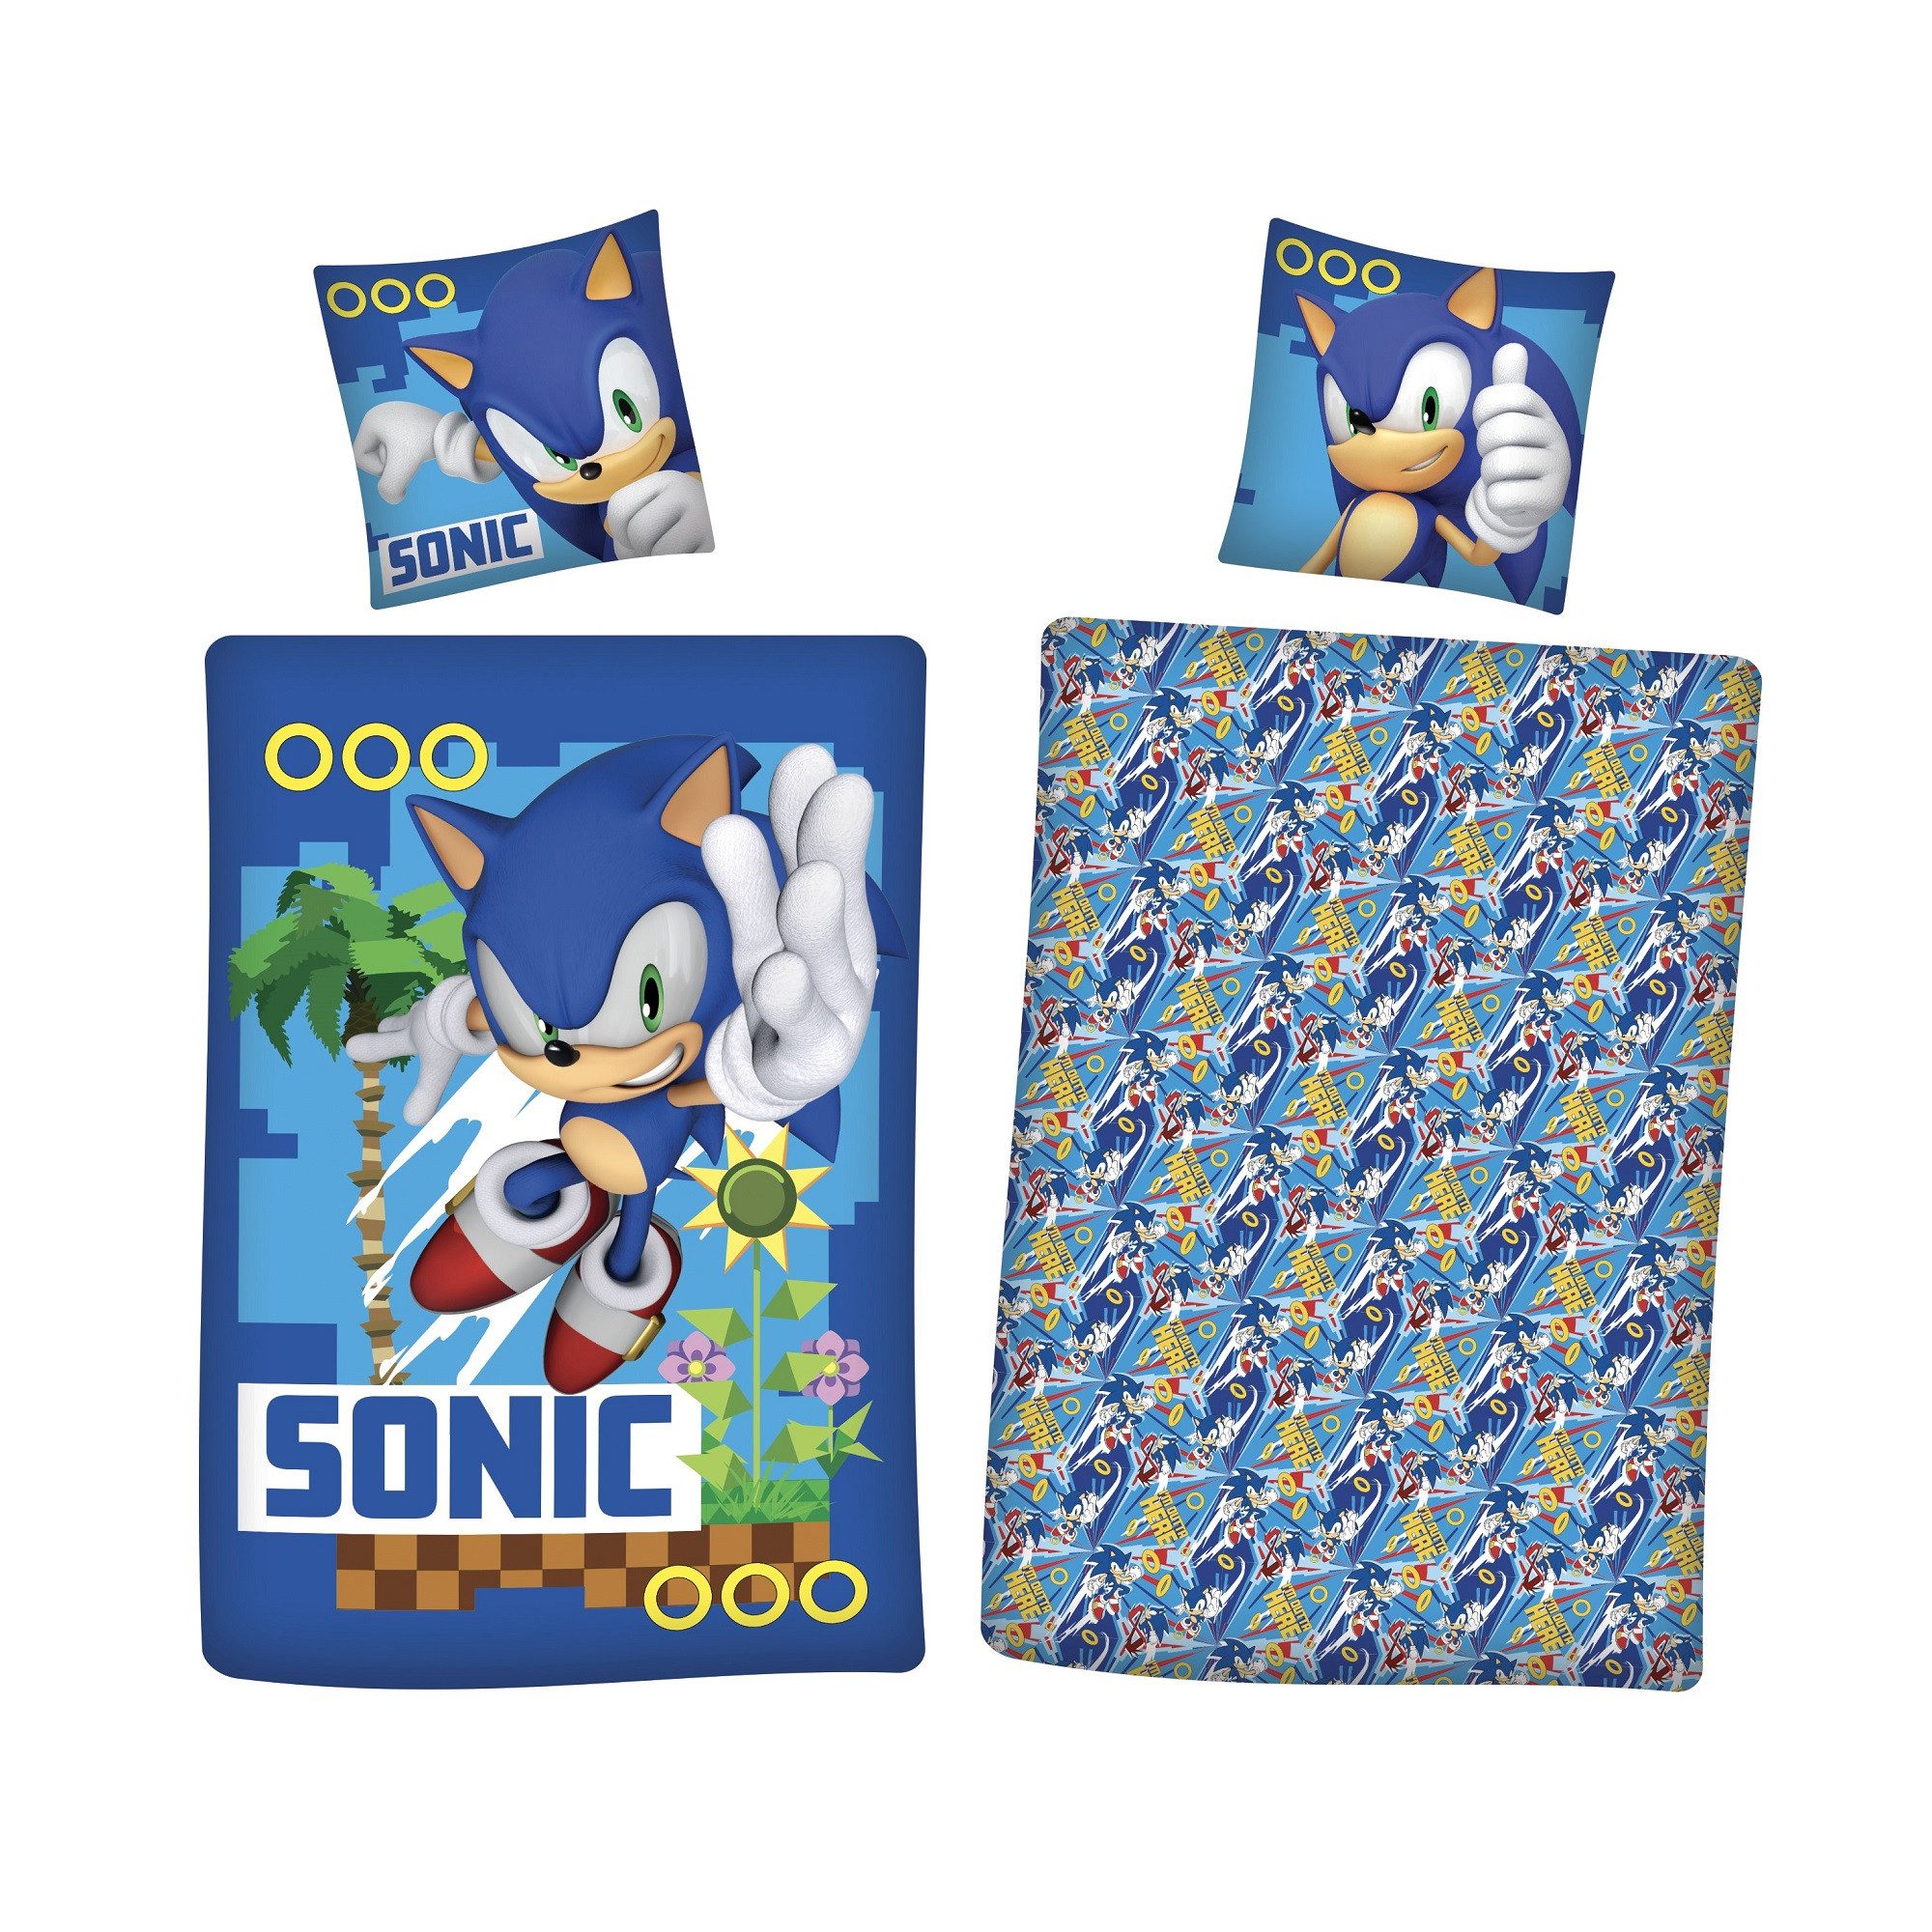 Bettwäsche Sonic The Hedgehog Kinder Bettwäsche 2tlg. Set 135x200 80x80, Sonic The Hedgehog, 2 teilig, Baumwolle